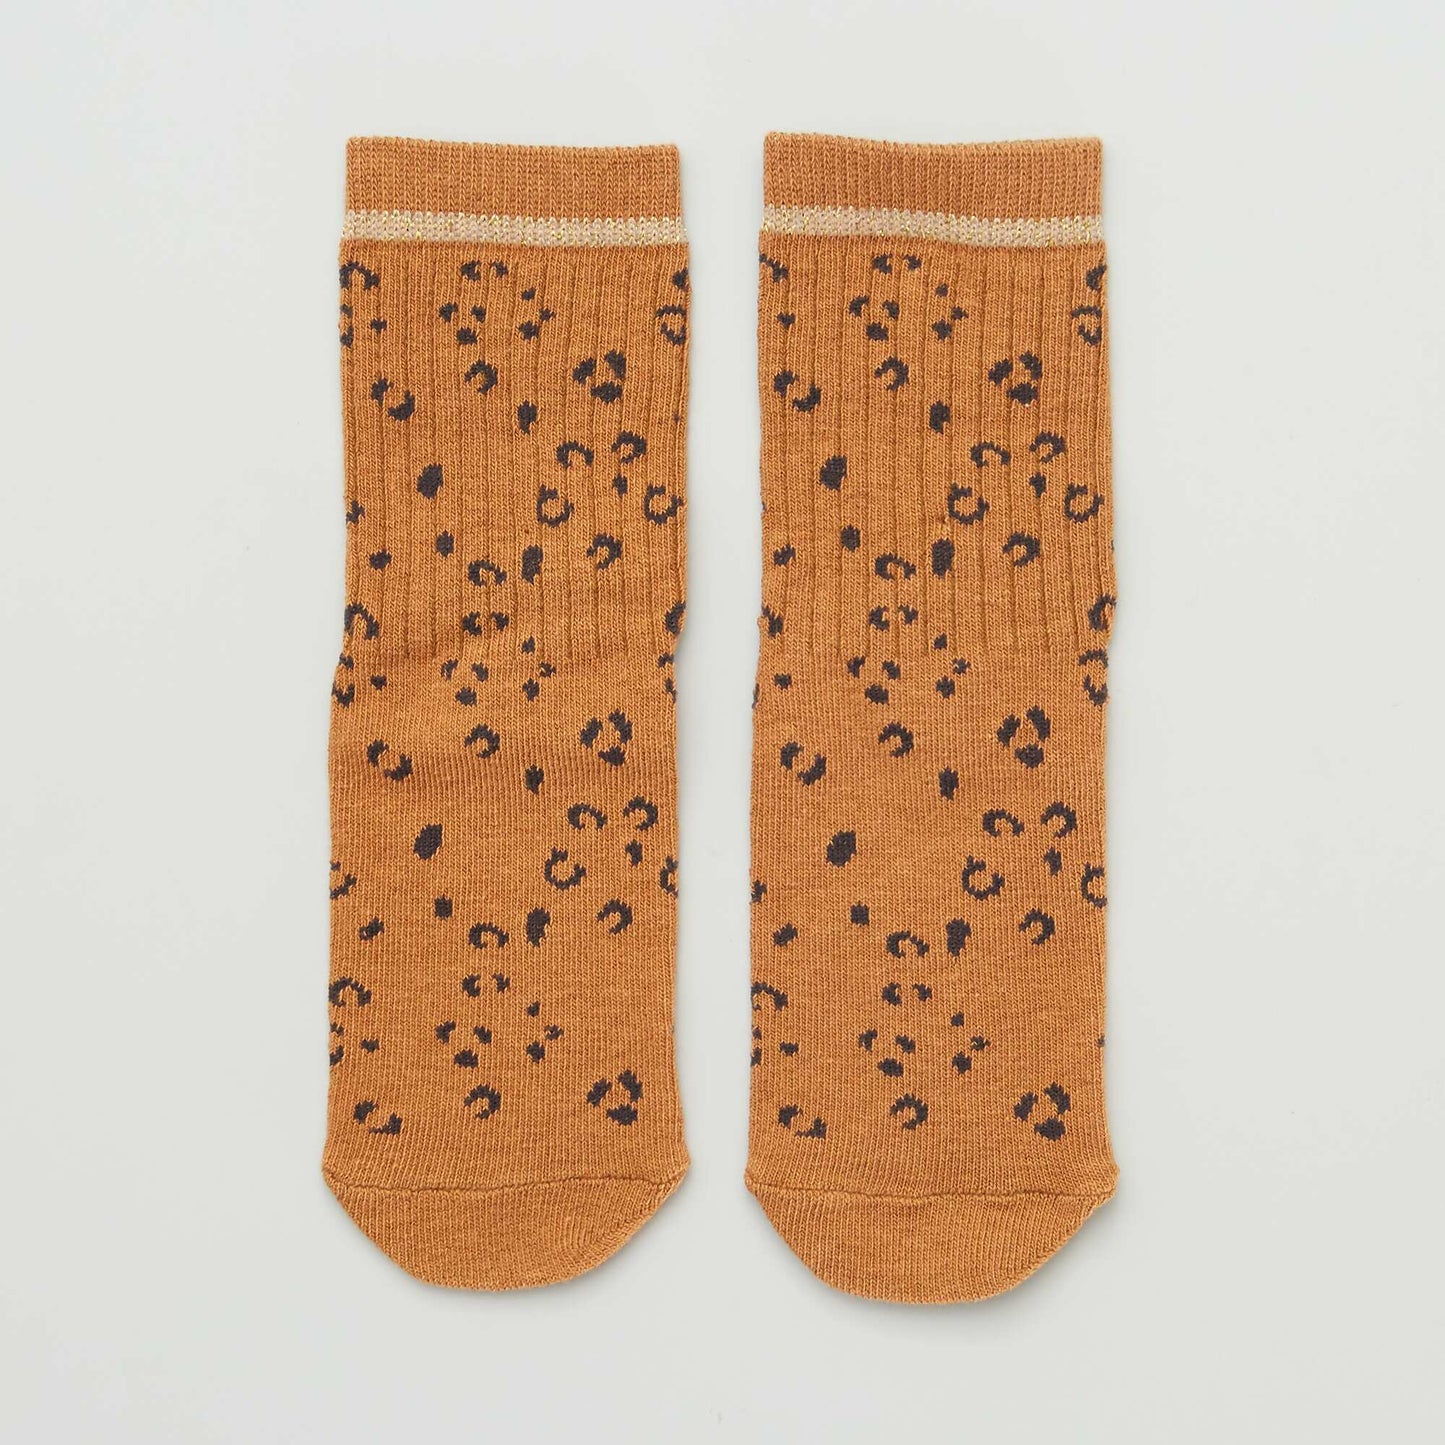 Pack of 3 pairs of leopard socks BROWN